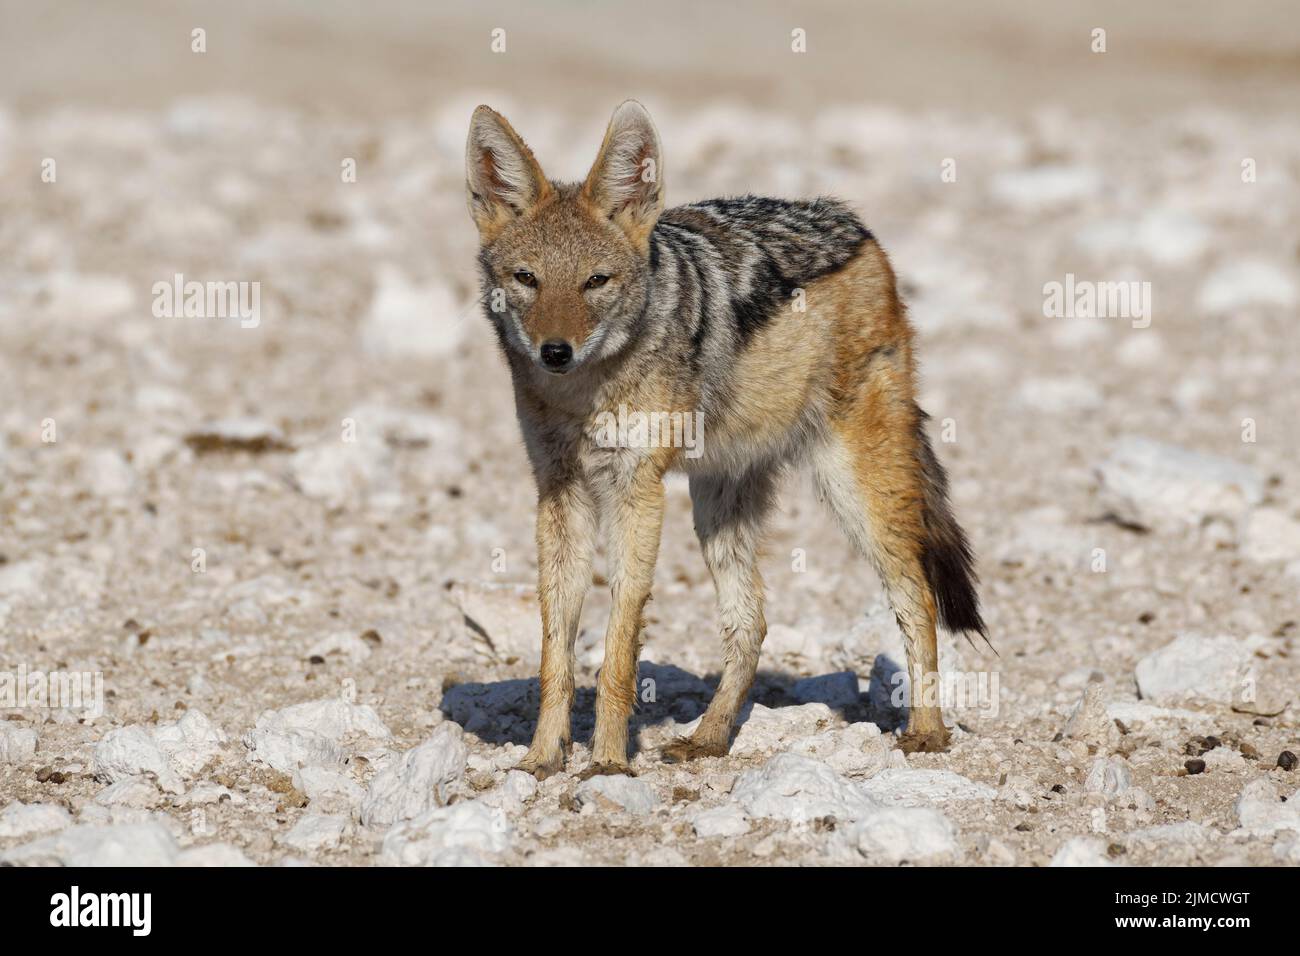 Black-backed jackal (Canis mesomelas), adult standing on arid ground, alert, Etosha National Park, Namibia, Africa Stock Photo